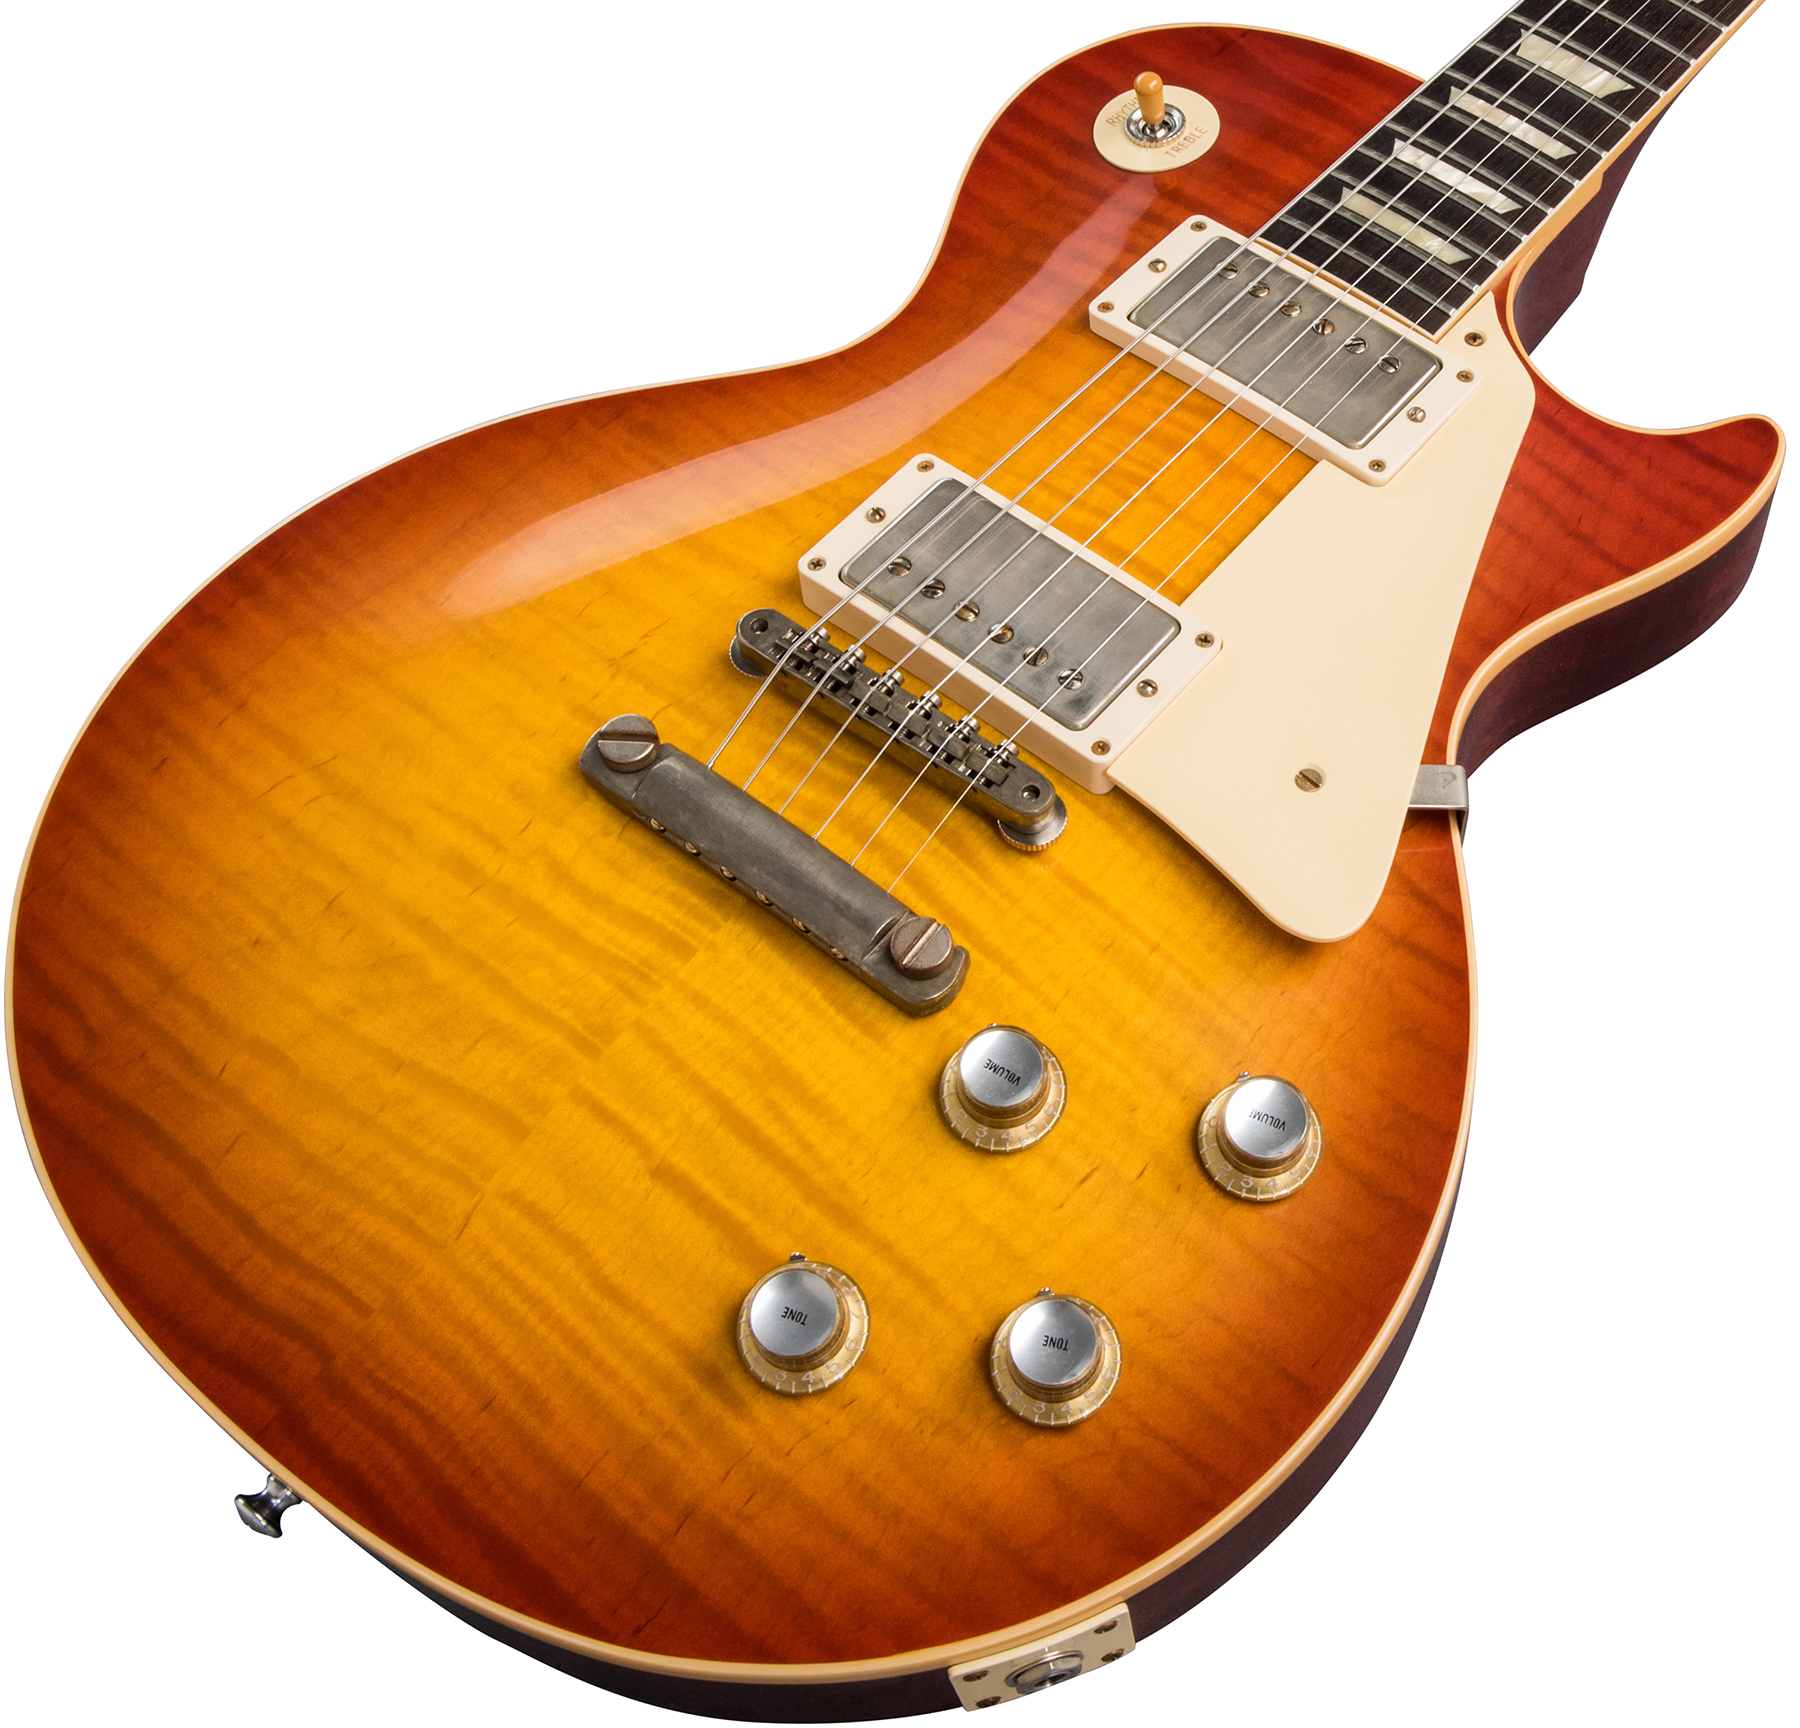 Gibson Custom Shop Les Paul Standard 1960 Reissue 2019 2h Ht Rw - Vos Washed Cherry Sunburst - Guitarra eléctrica de corte único. - Variation 3